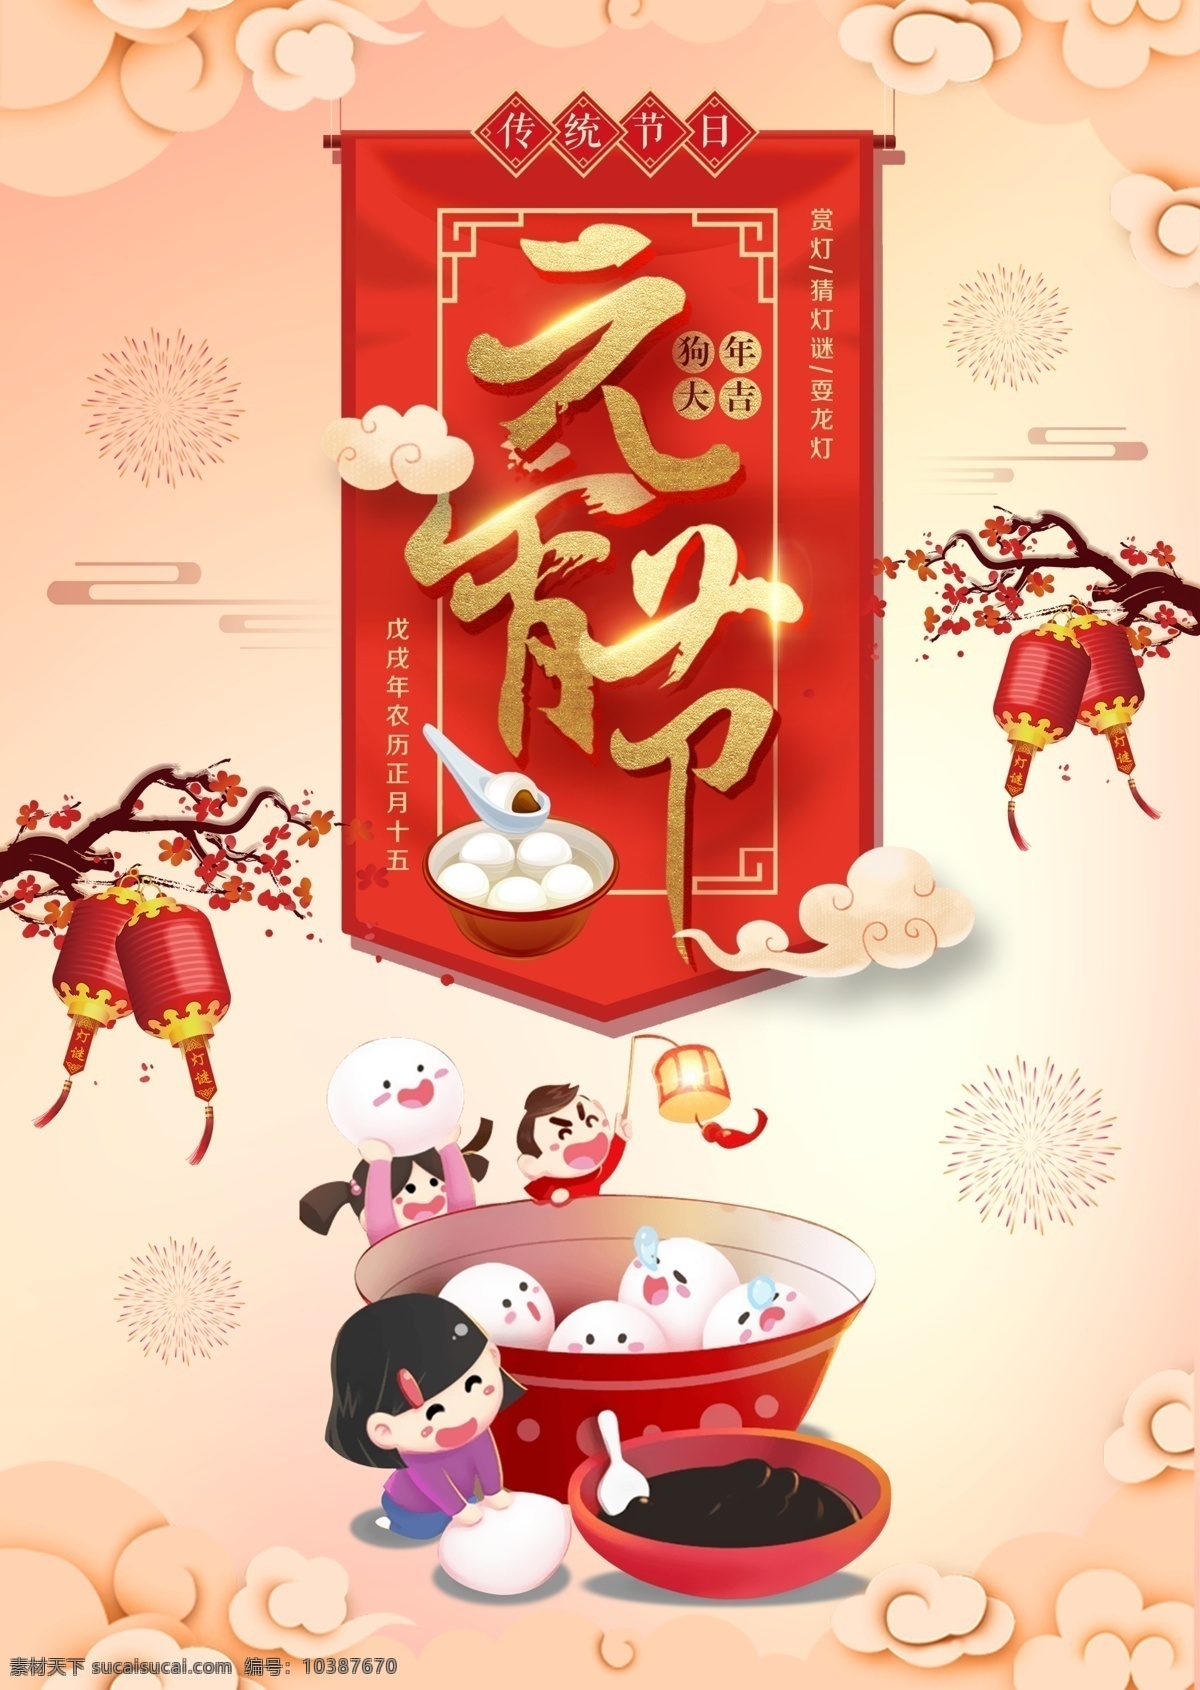 2018 中国 传统节日 元宵节 元宵 中国风 高清图片素材 设计素材 模板设计 海报 高清 设计图